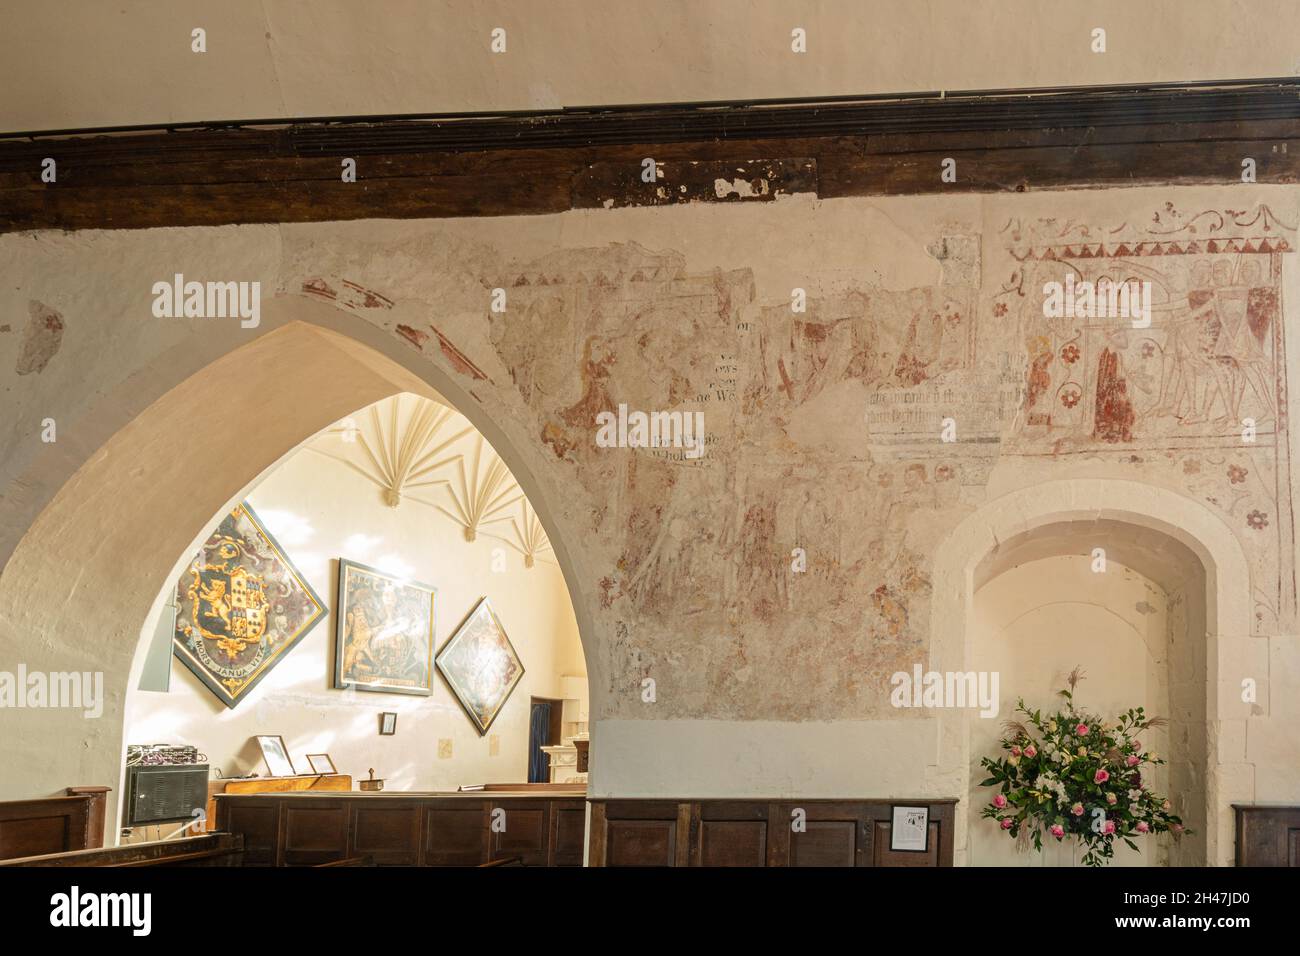 Historische Wandmalereien in der St. James' Church, Bramley Village, Hampshire, Großbritannien, ein denkmalgeschütztes Gebäude. Gemälde des Mordes an Thomas Becket Stockfoto